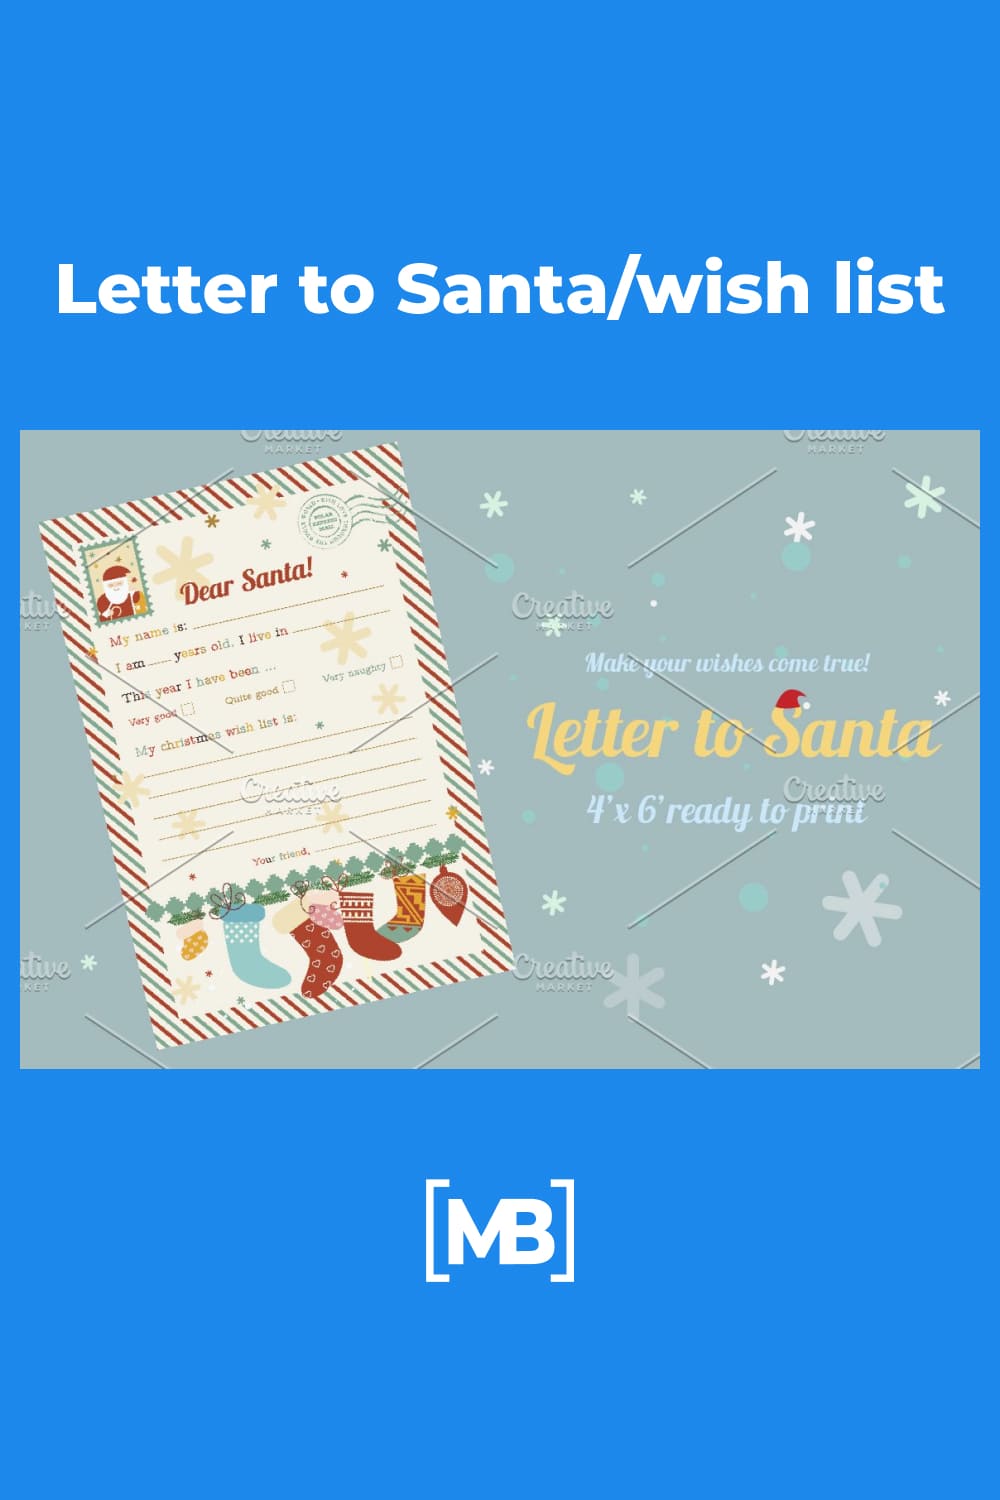 Retro letters to Santa.